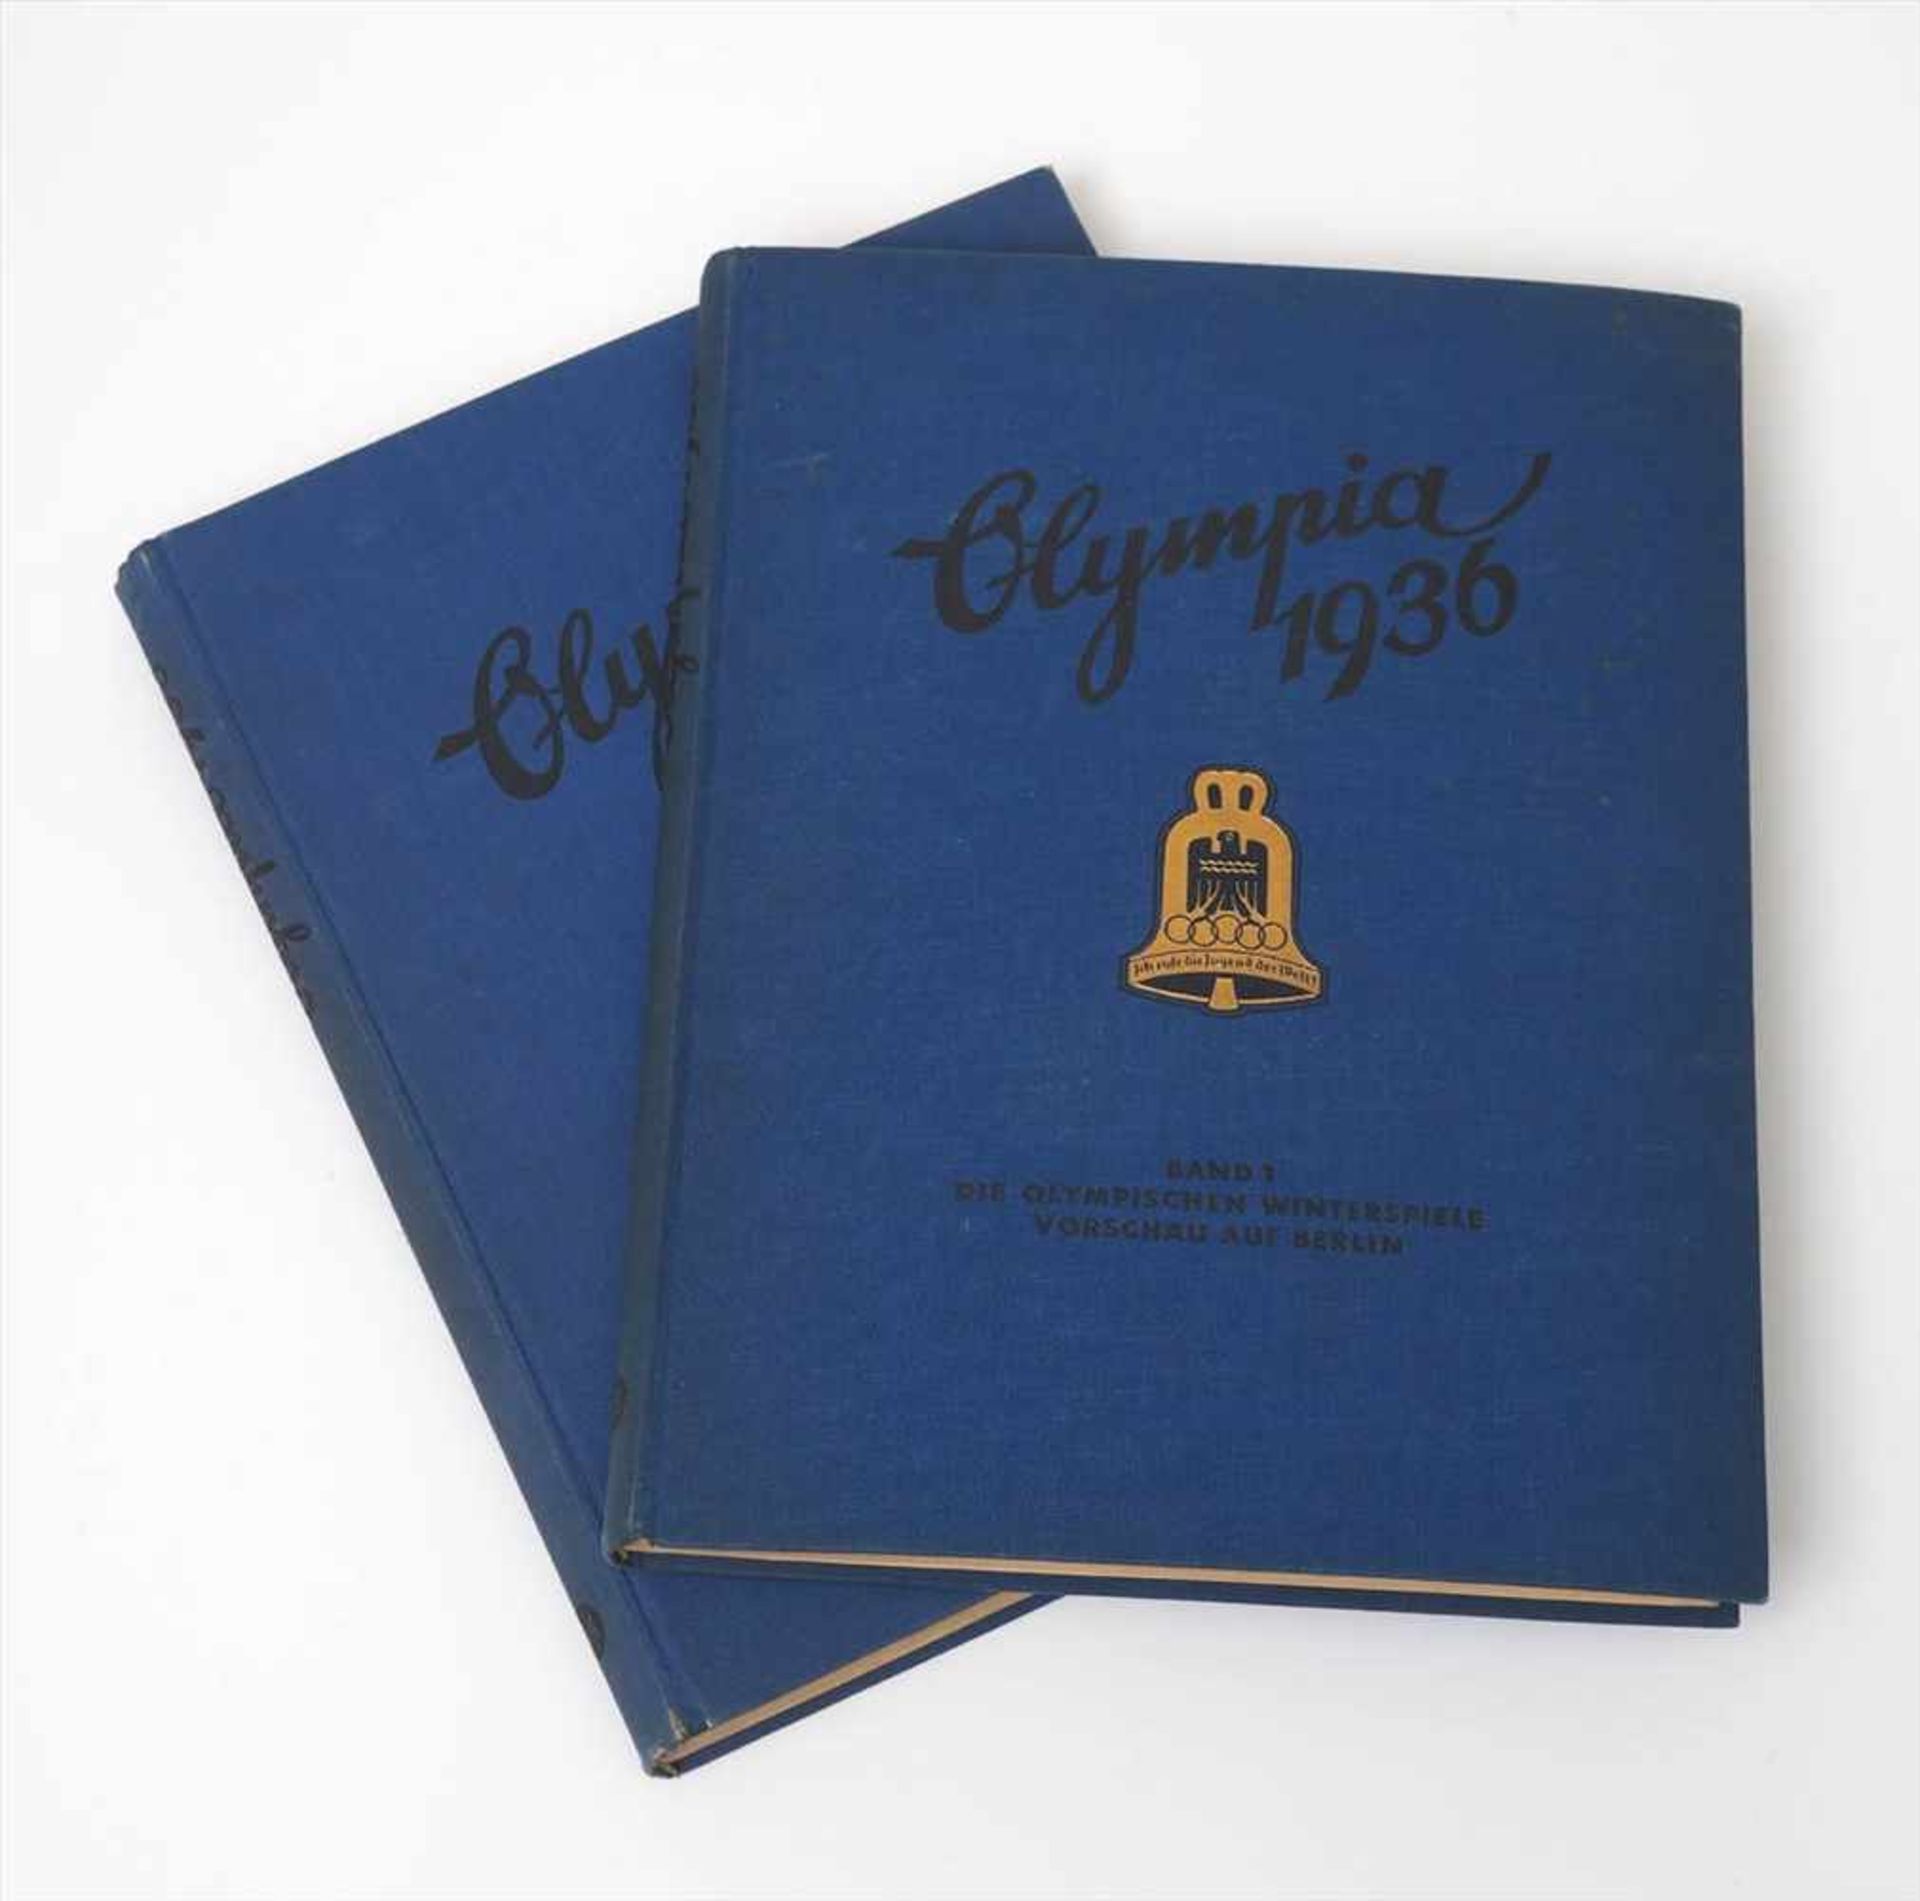 Zigarettenbilderalbum, Altona-BahrenfeldDie olympischen Spiele 1936, Band 1 und 2. Vollständig.